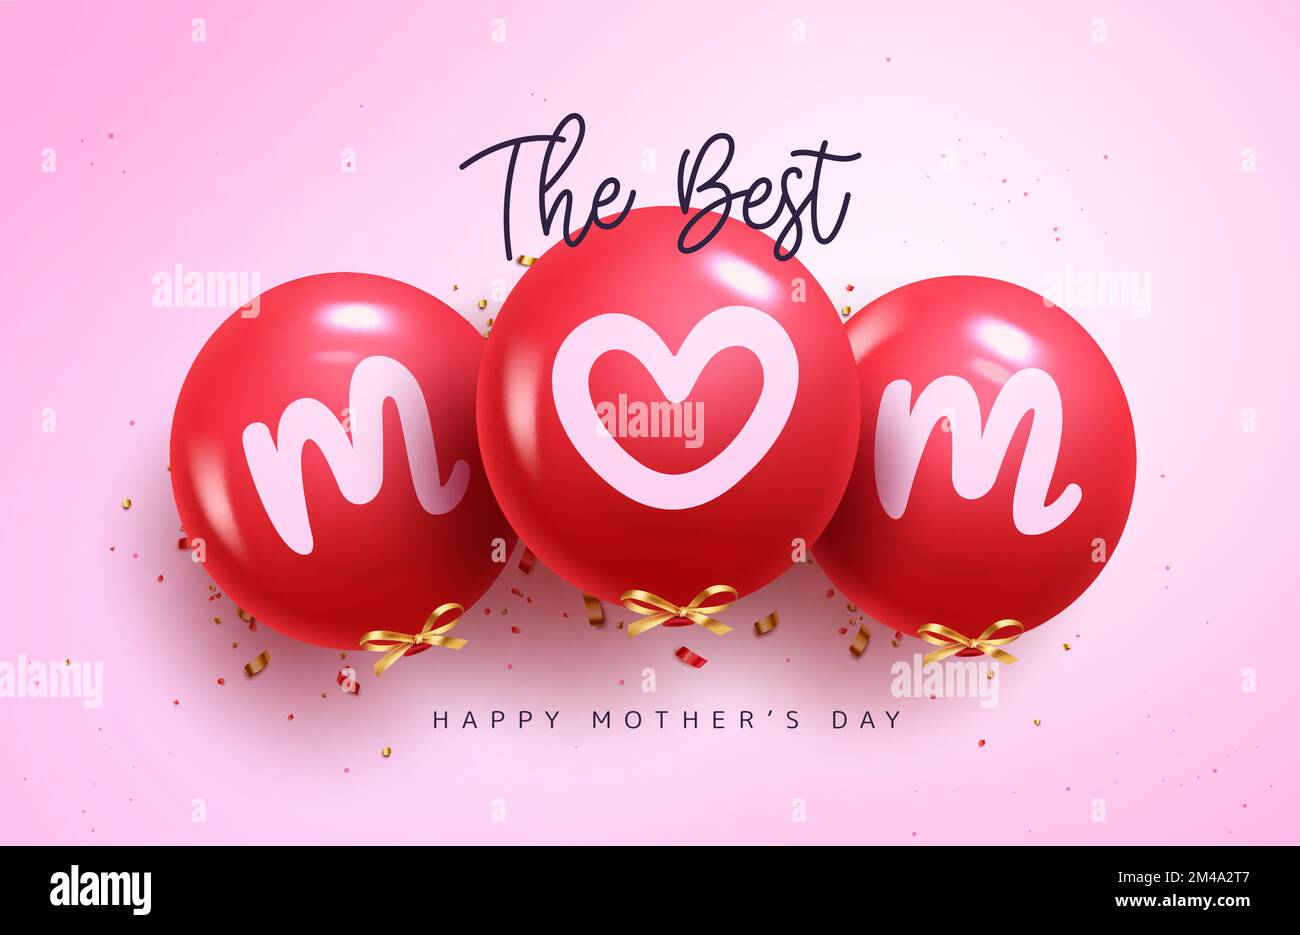 Disegno vettoriale dei palloncini del giorno della madre. Il miglior testo mom in palloncino gonfiabile rosso per la mummia e le donne celebrazione in sfondo rosa. Illustrazione Vettoriale